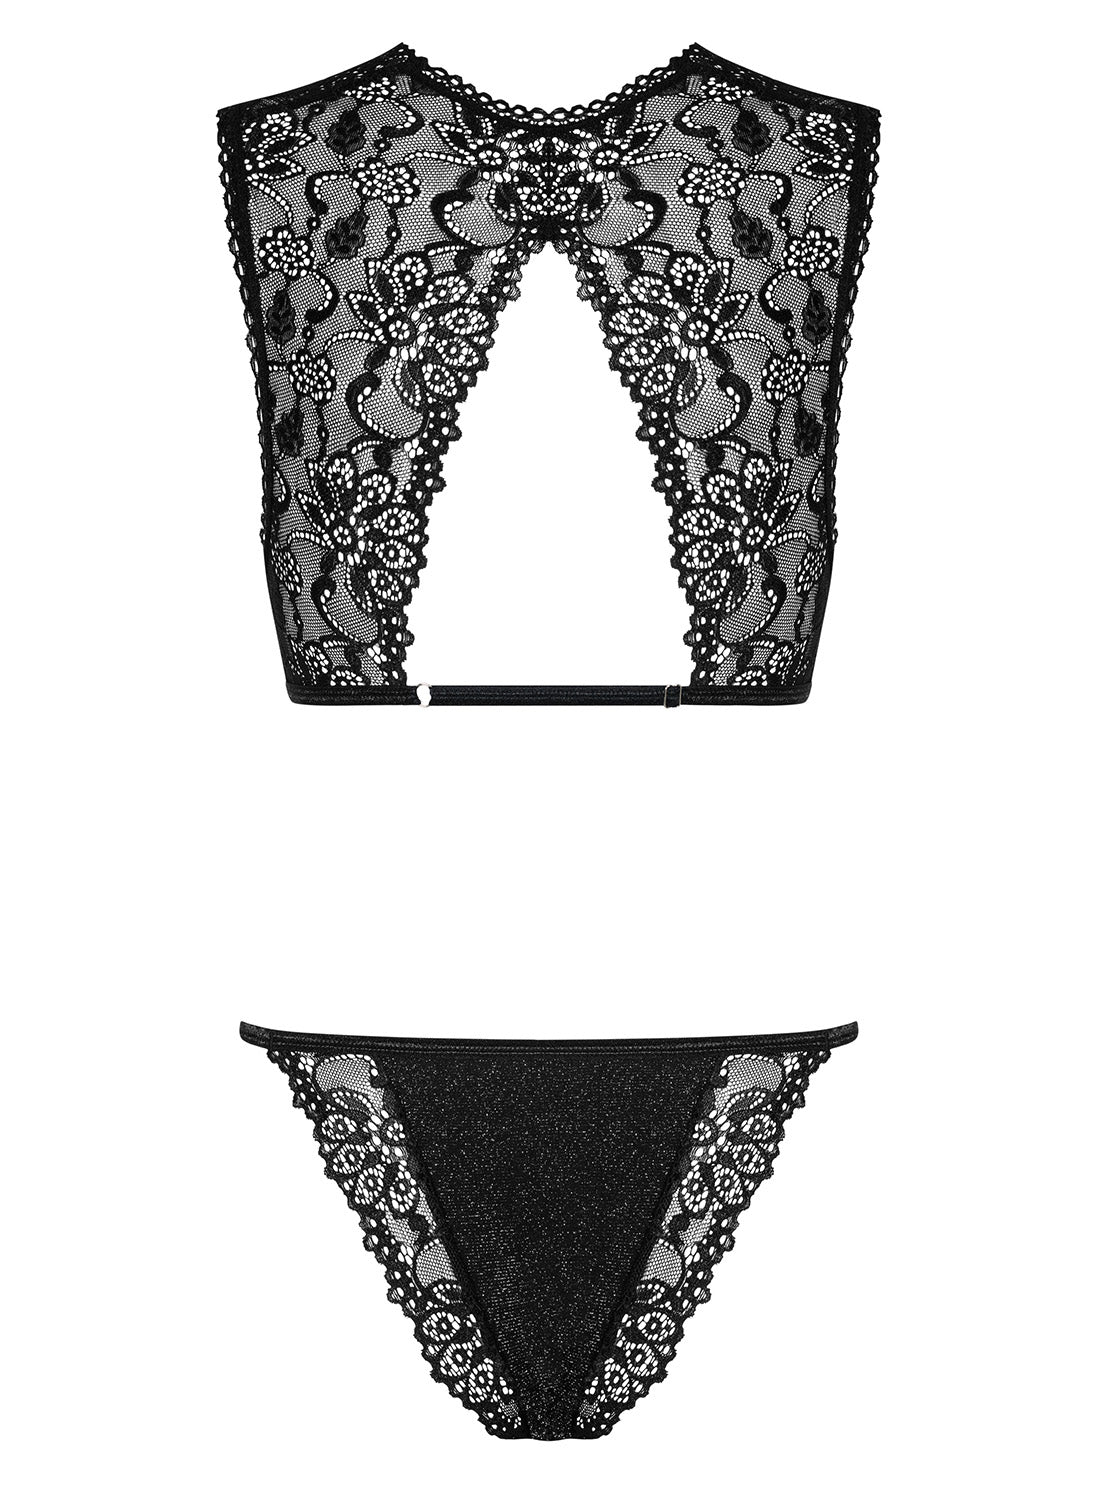 Elisetta Unique black set with elaborate floral lace